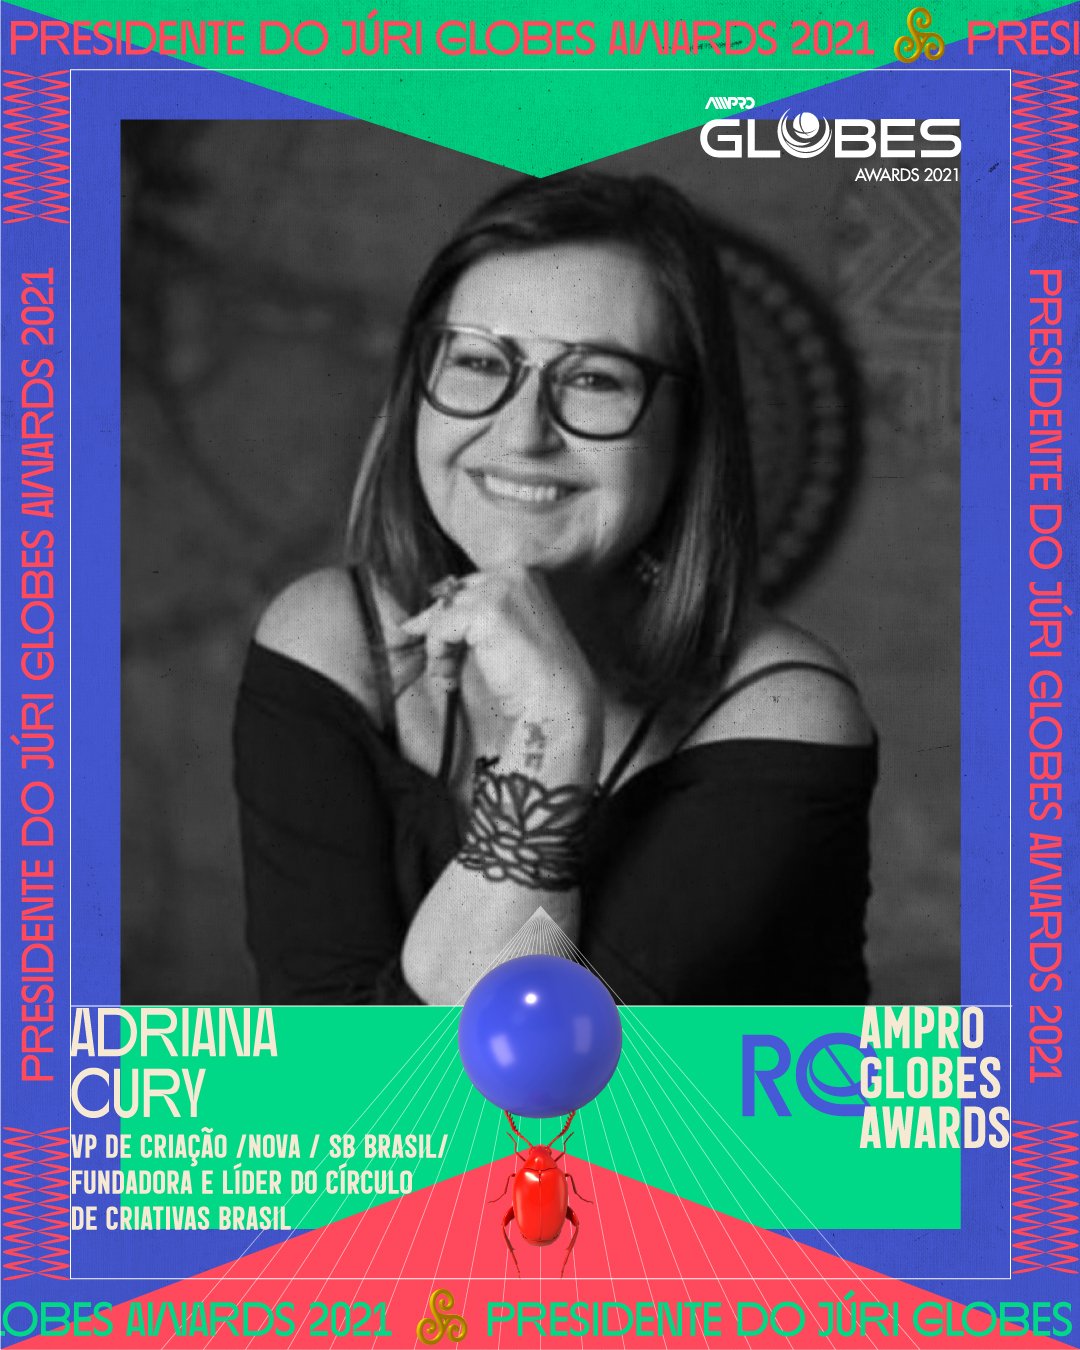 AMPRO Globes Awards abre inscrições e anuncia Adriana Cury na presidência do júri